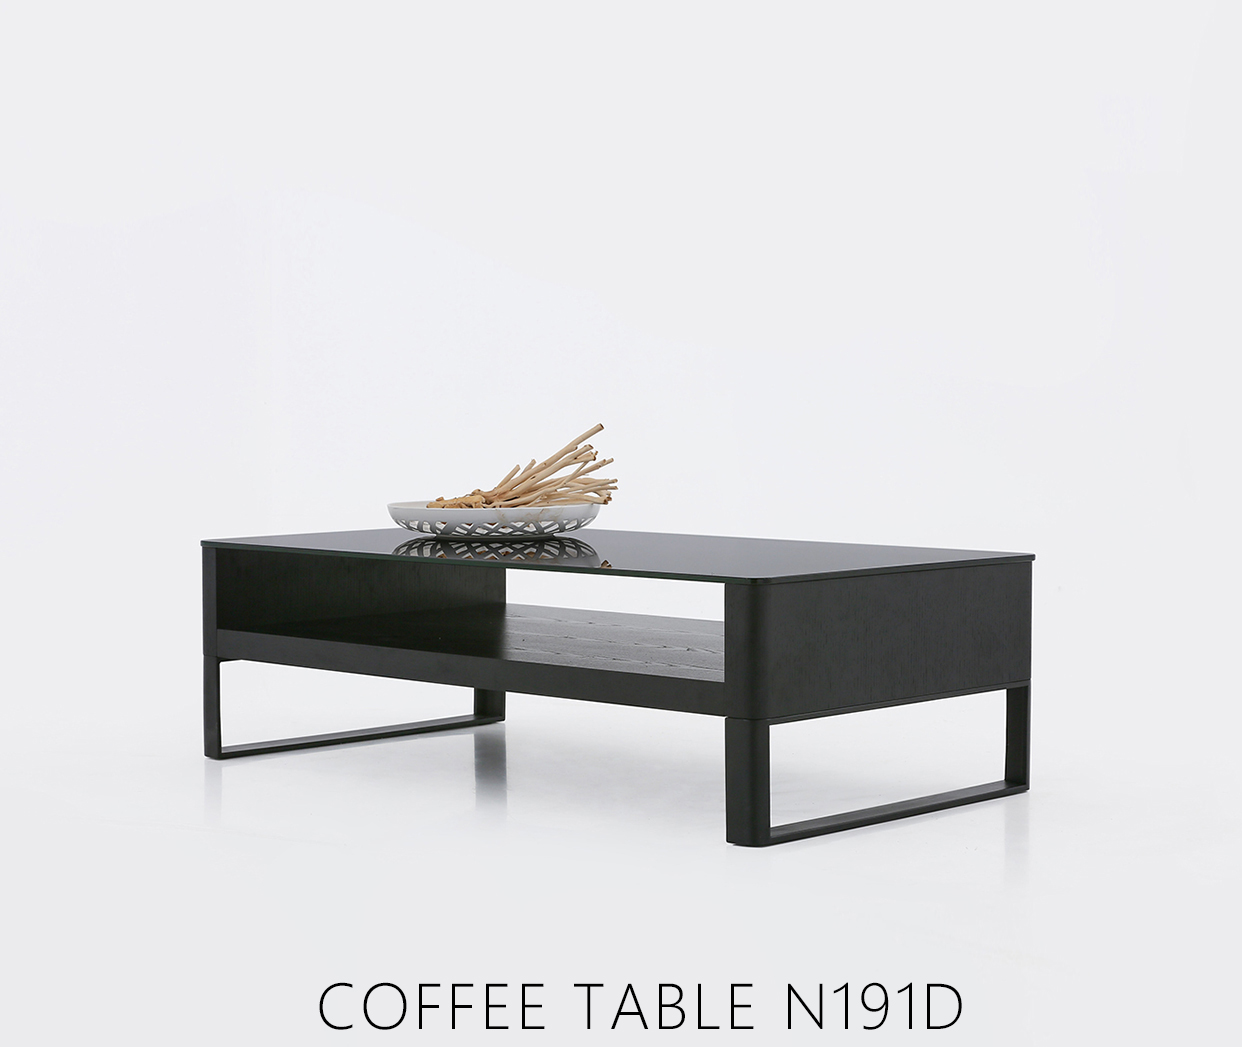 COFFEE TABLE N191D